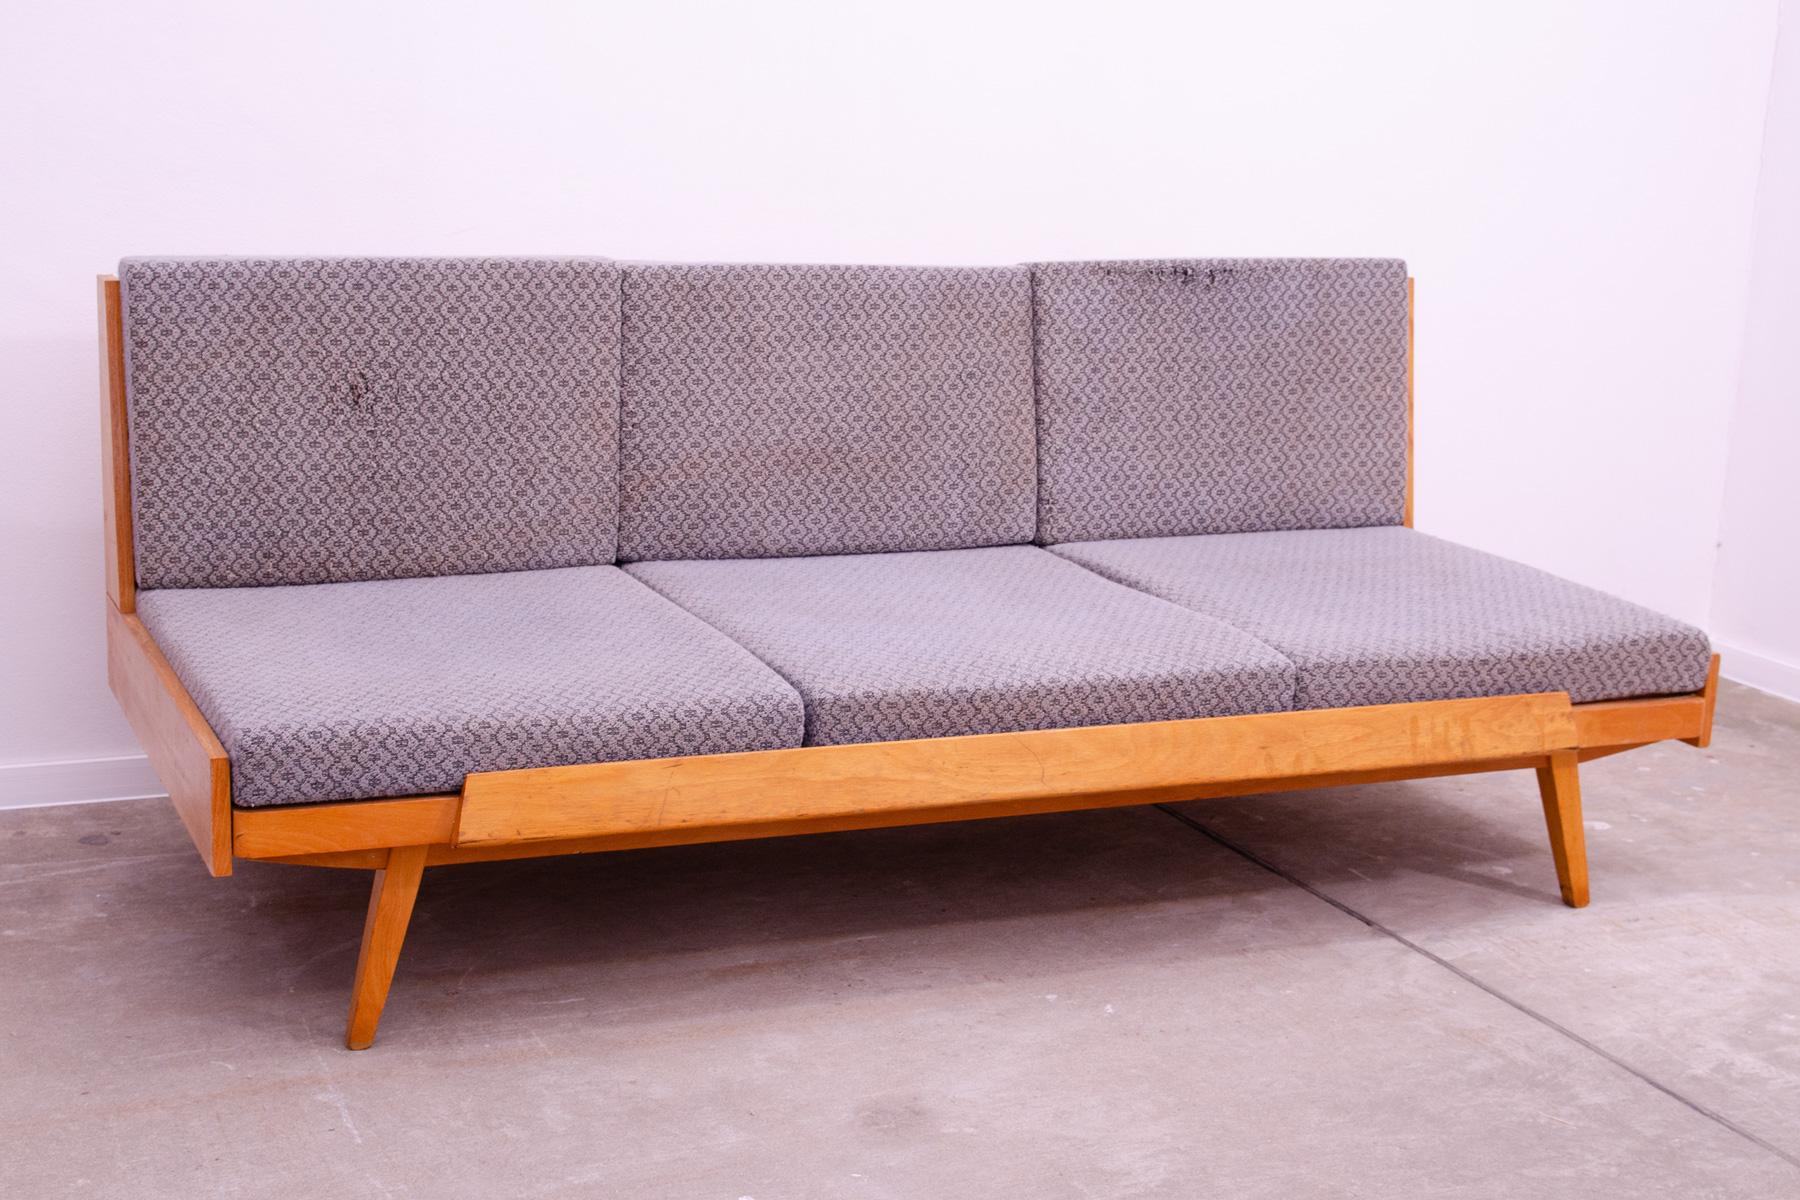 Canapé-lit du milieu du siècle, fabriqué dans l'ancienne Tchécoslovaquie dans les années 1970. Le canapé est en bois de hêtre, il est en bon état de structure, le tissu montre d'importants signes d'âge et d'utilisation et a besoin d'être